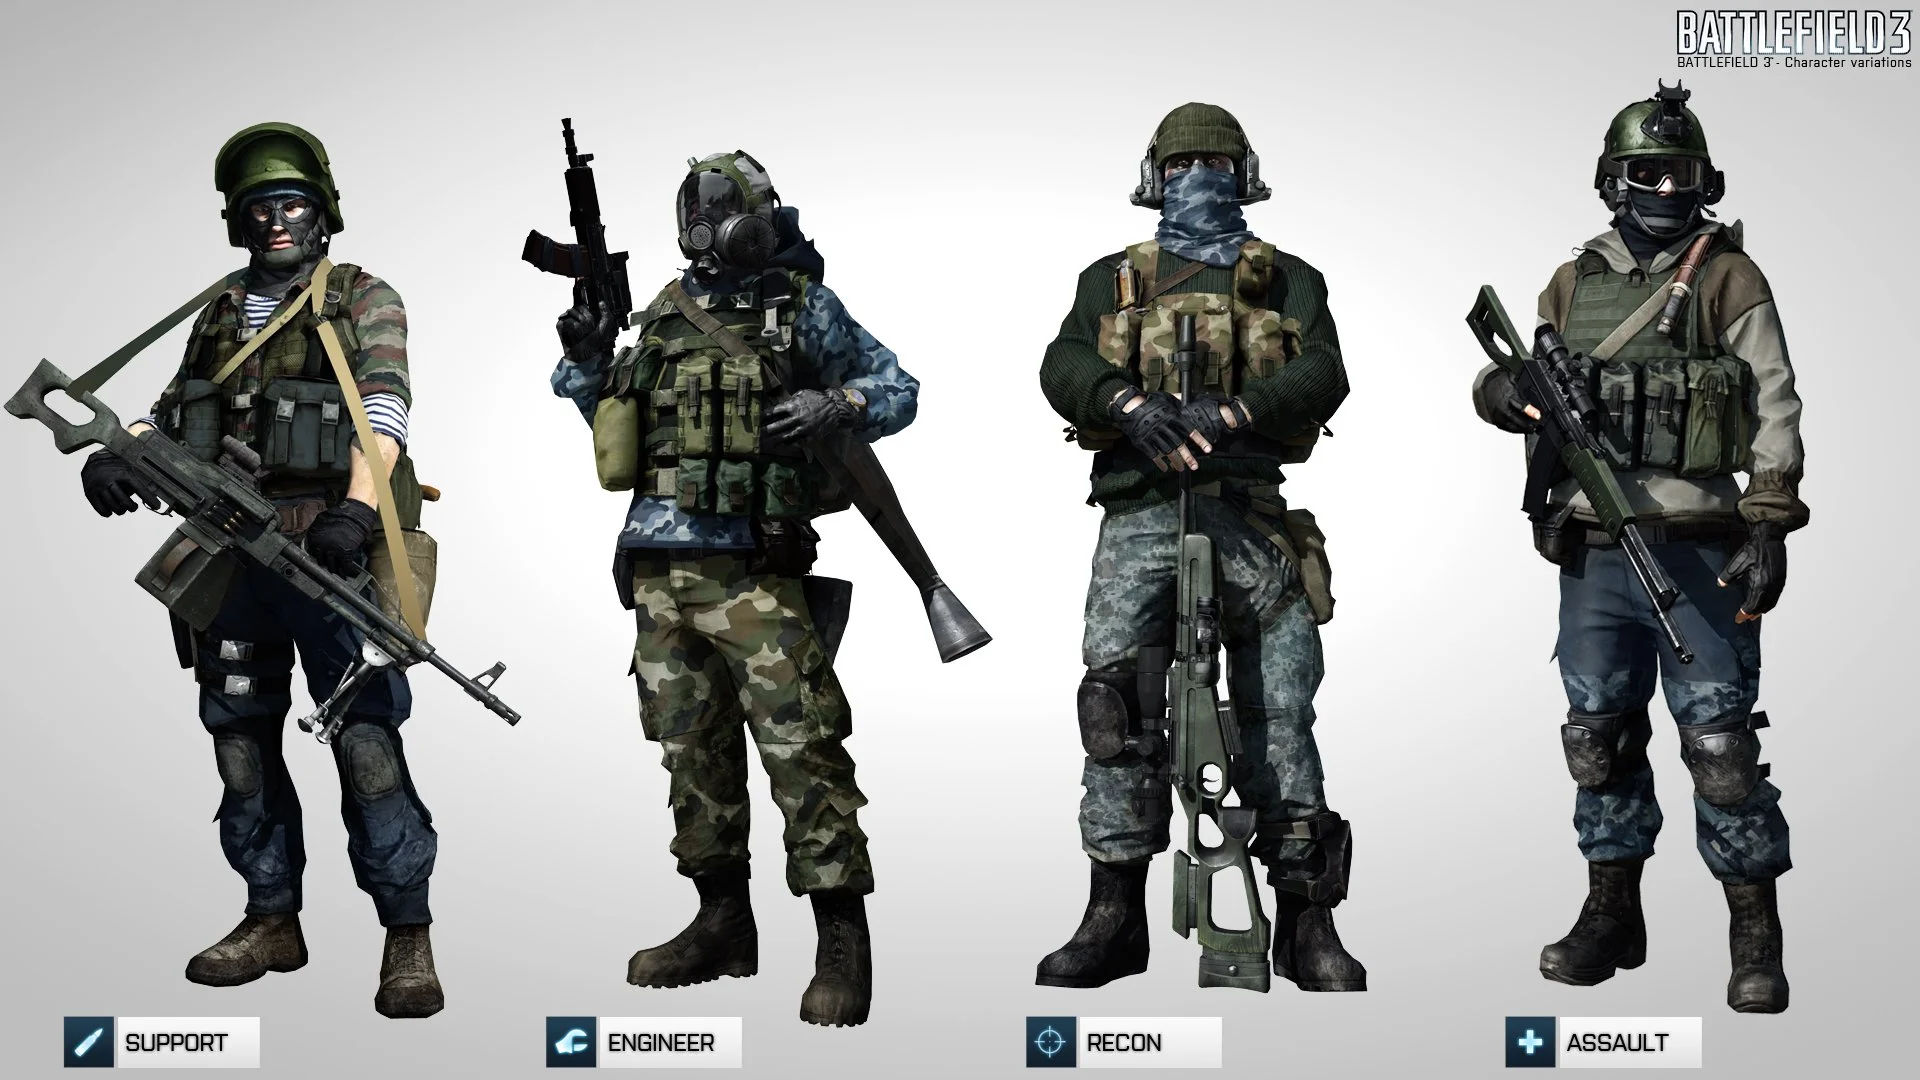 СПЕЦ: Российская военная форма в видеоиграх - фото 3